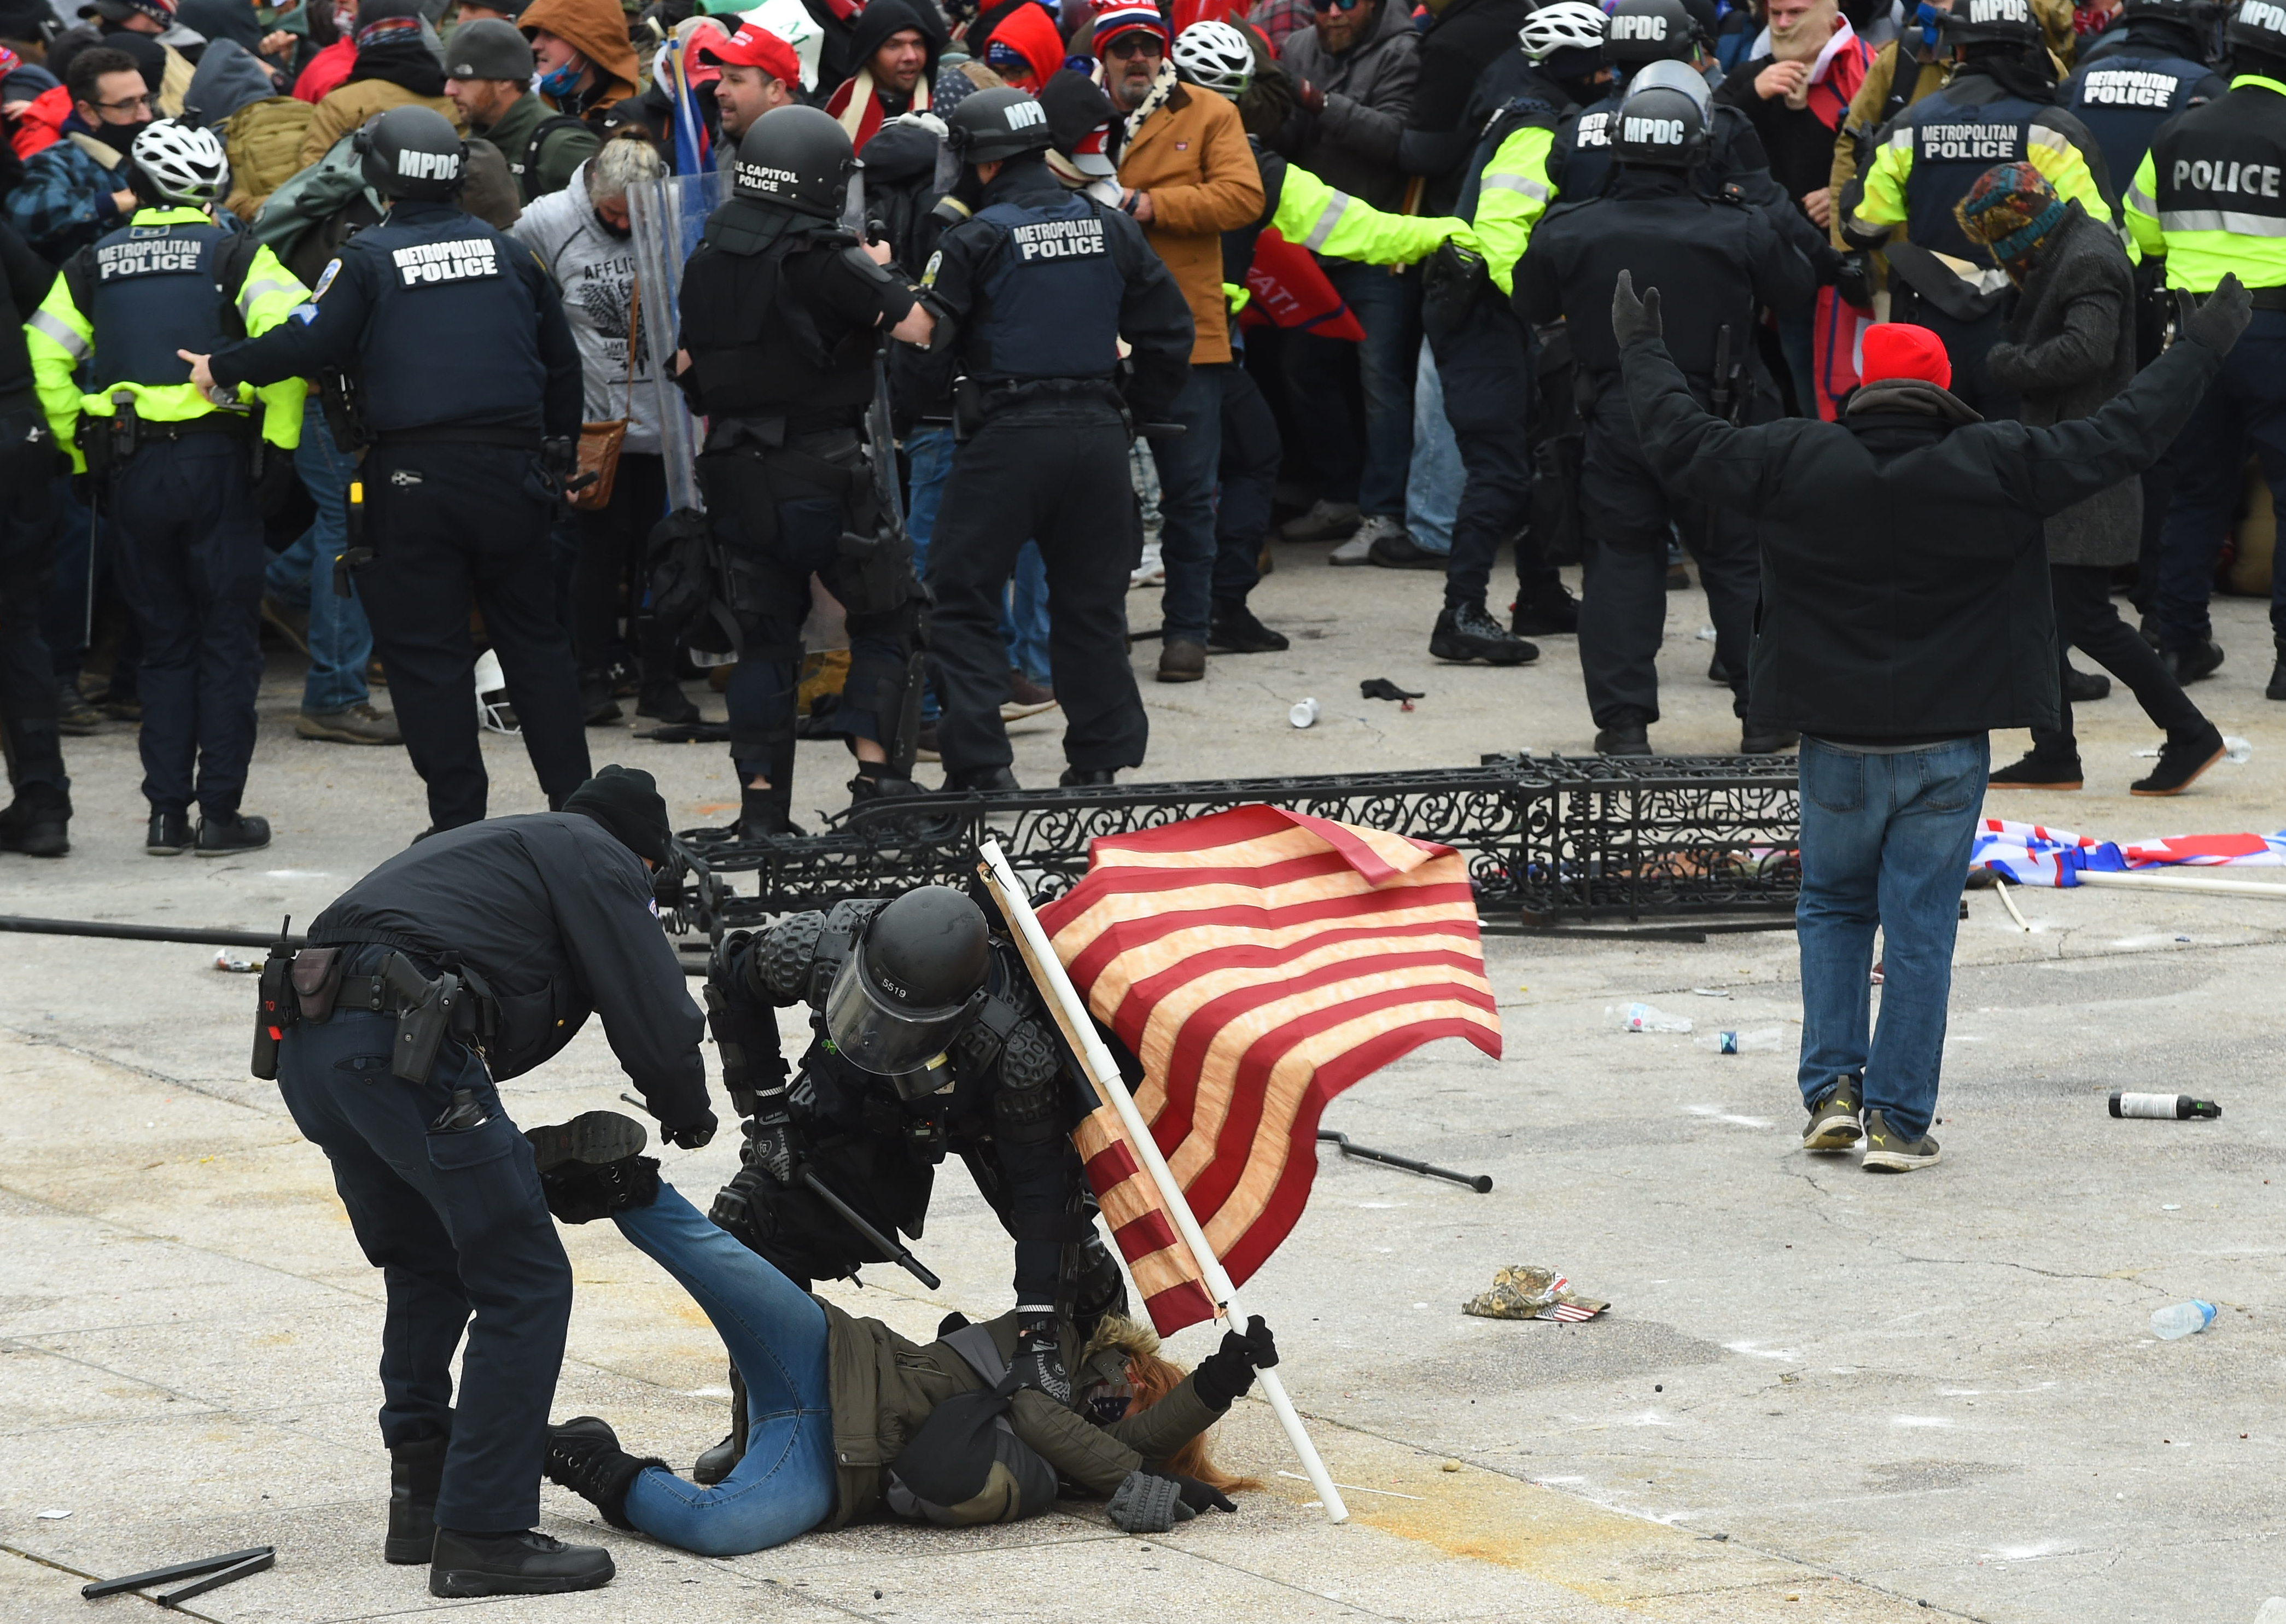 Totale chaos in Amerika: 'Dit is een aanval op de democratie'